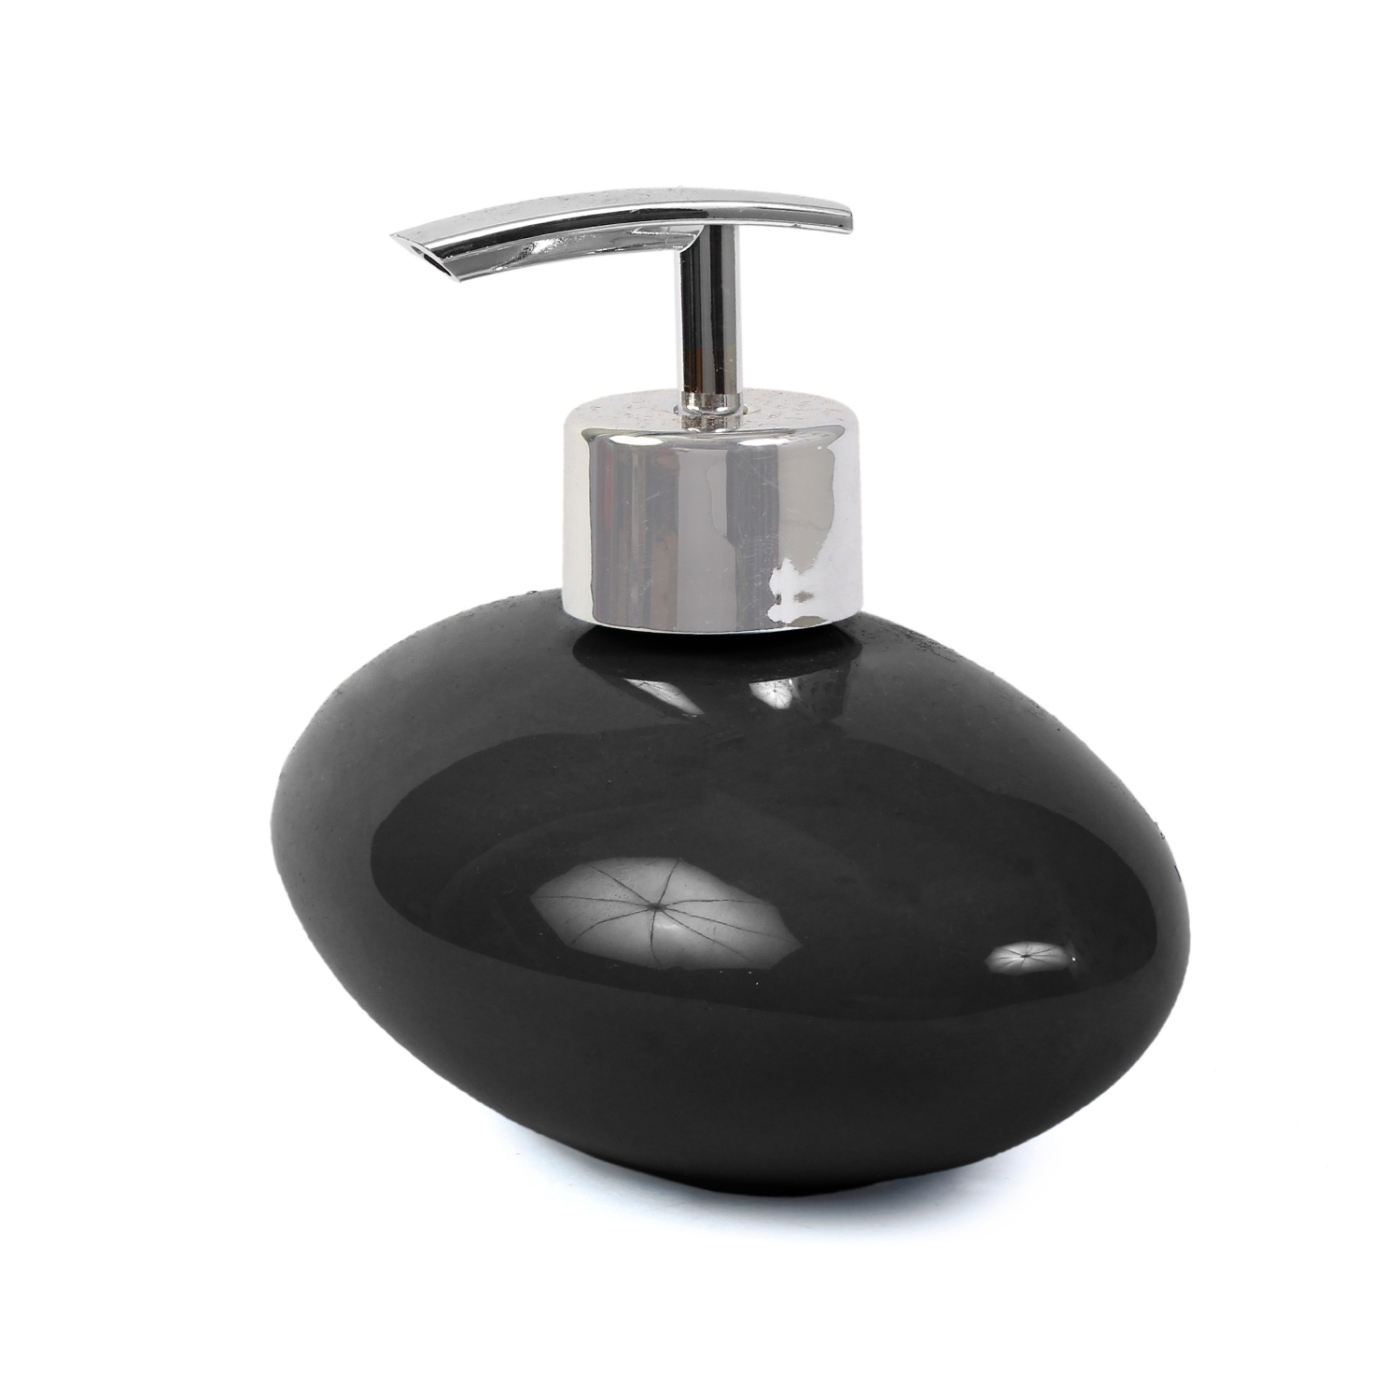 ORKA HOME Oval Soap Dispenser - Black  